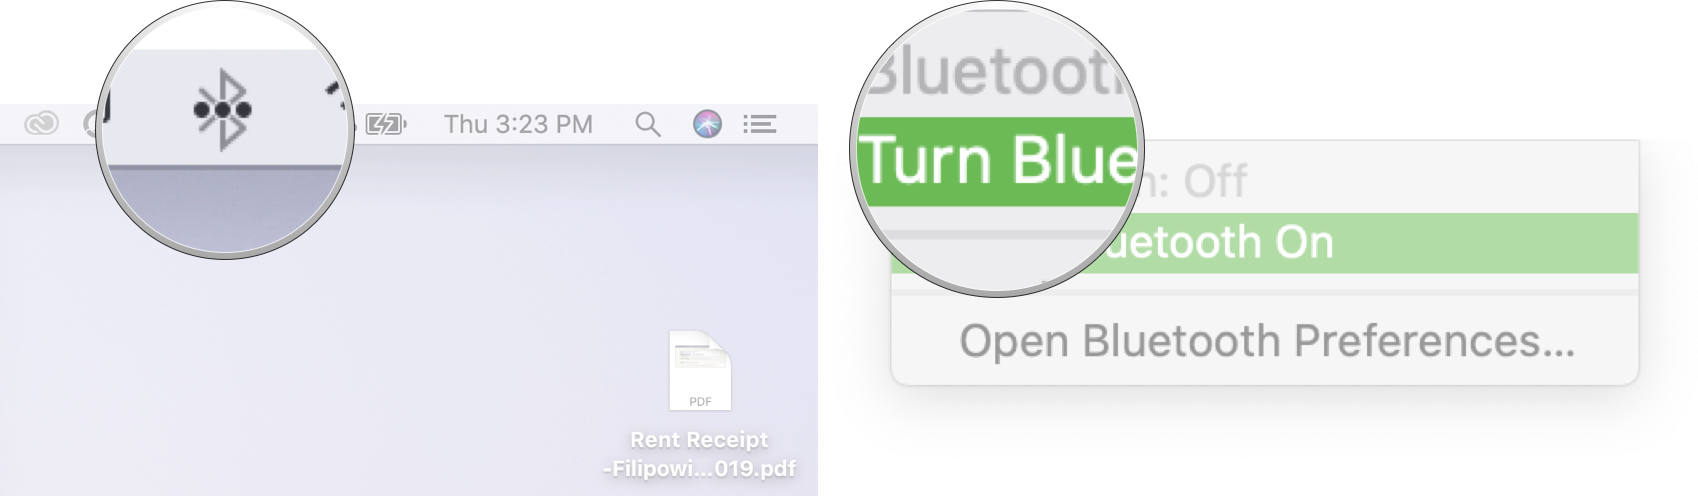 Hidupkan Bluetooth pada Mac: Klik ikon Bluetooth dalam bar menu dan kemudian klik Hidupkan Bluetooth